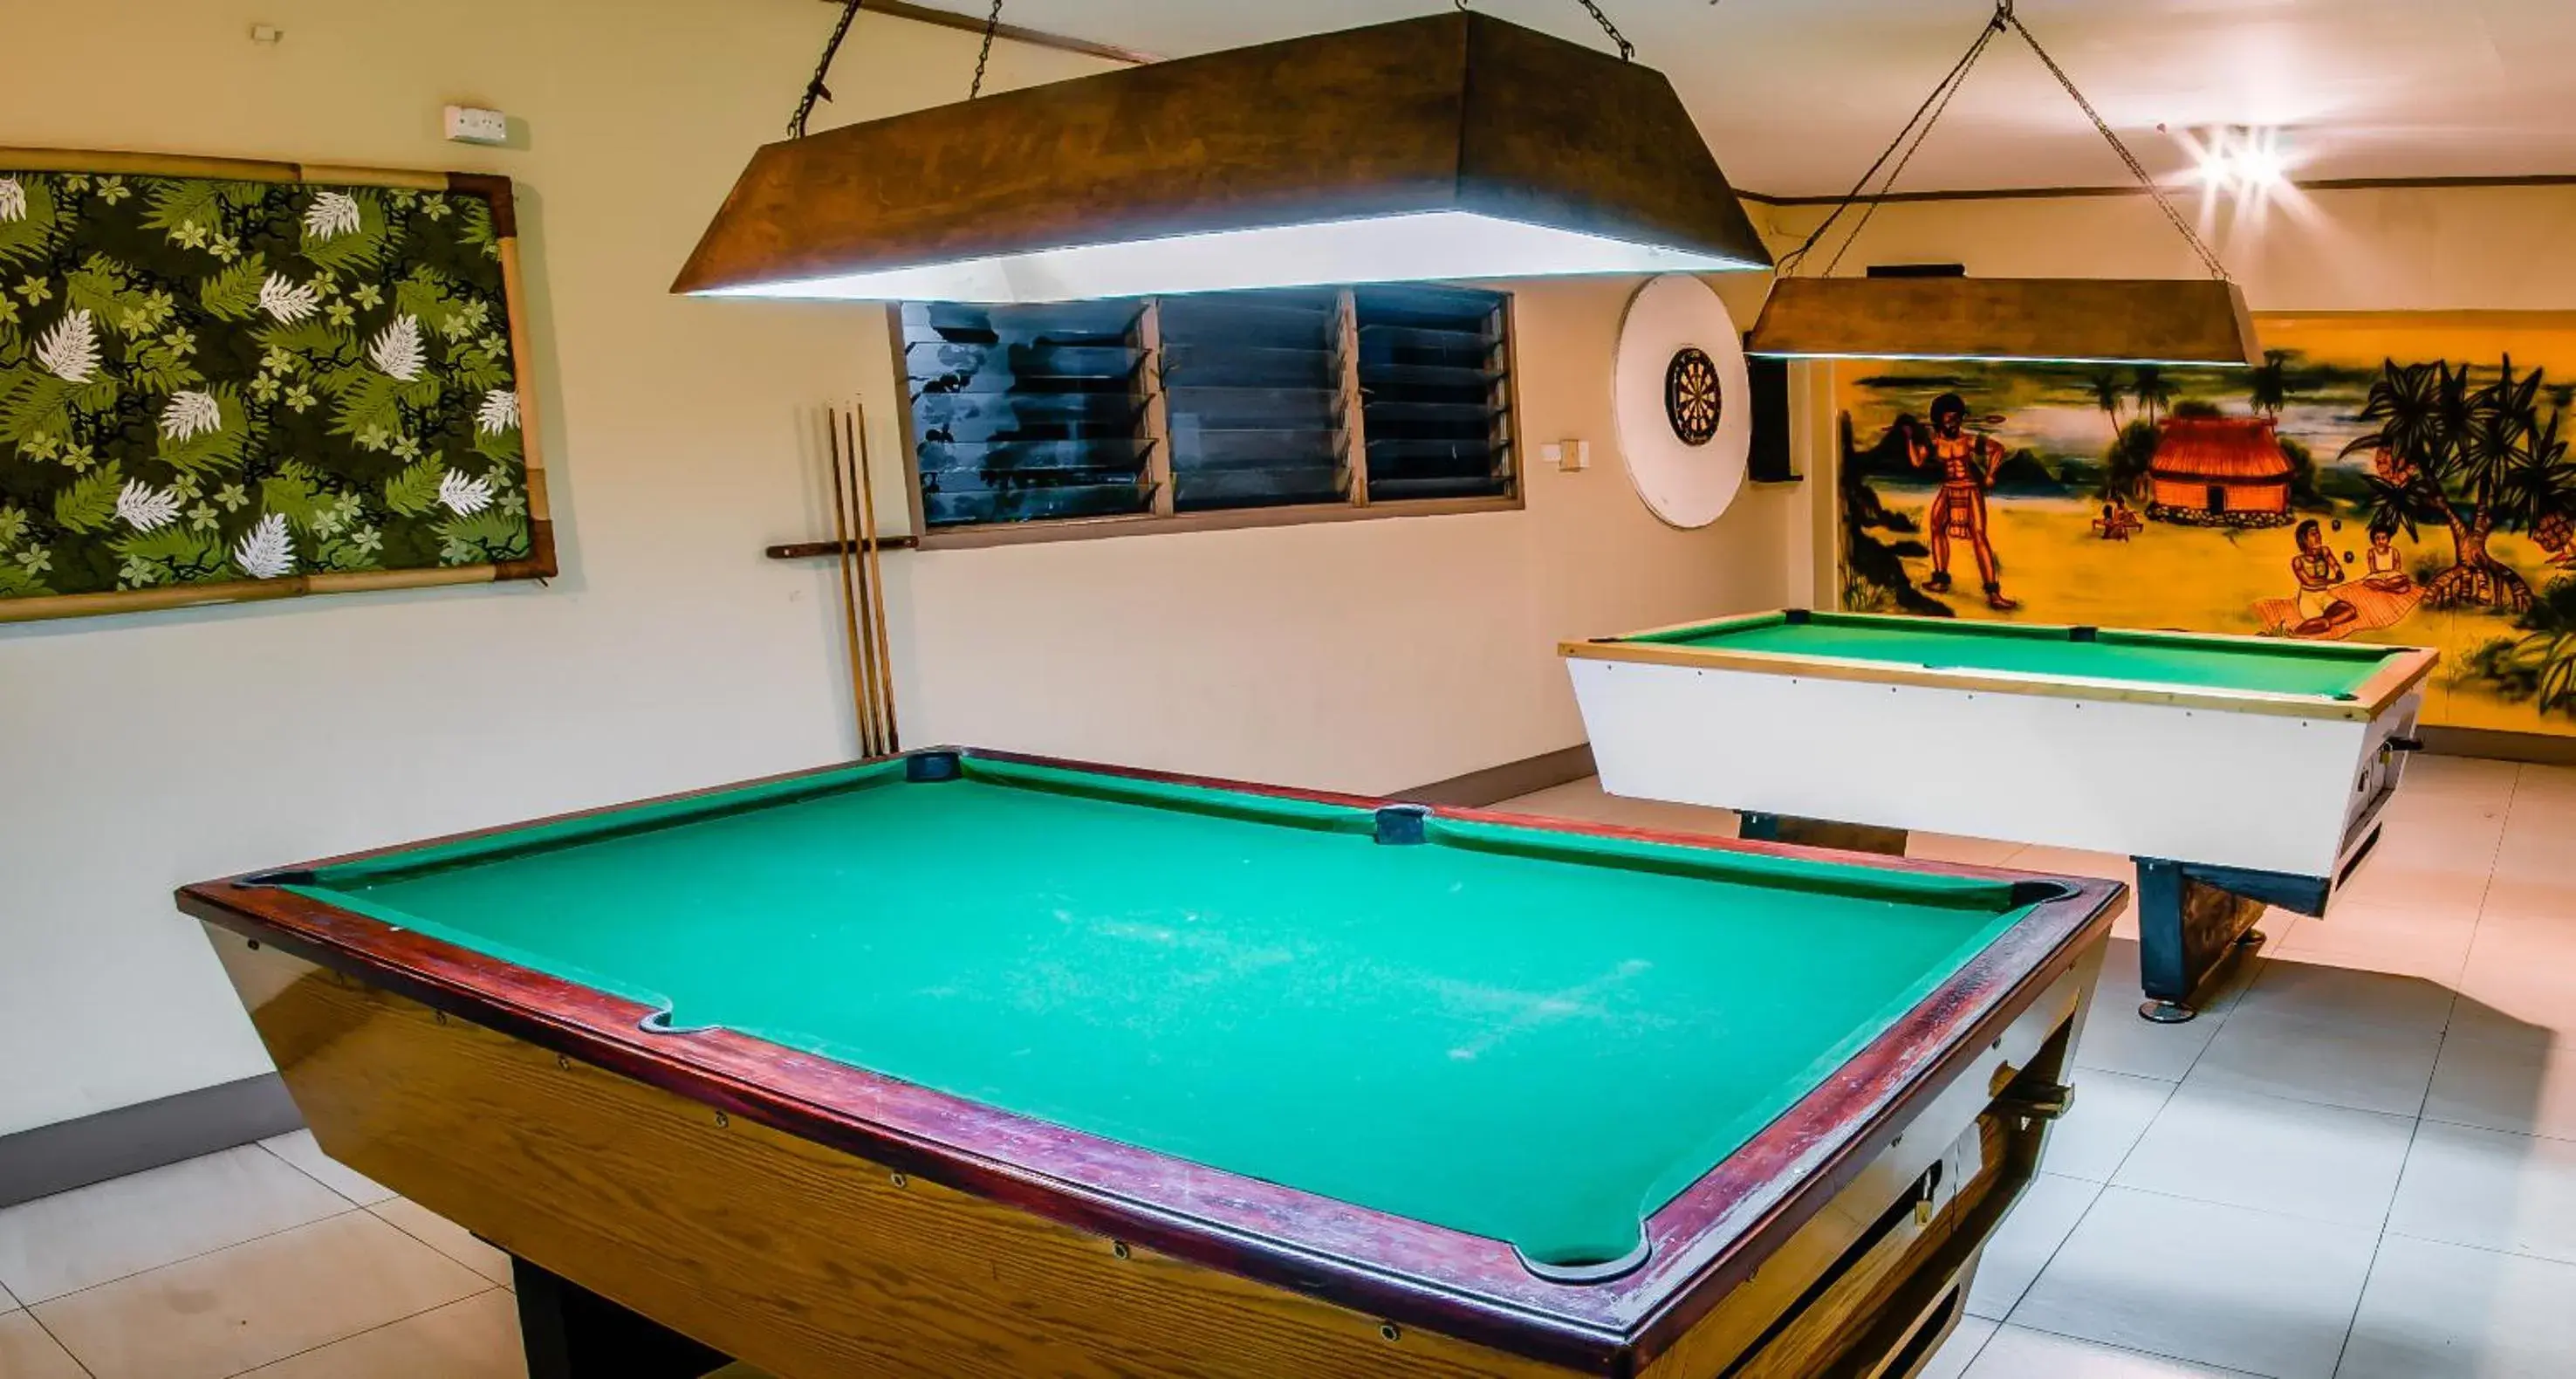 Game Room, Billiards in Tanoa Skylodge